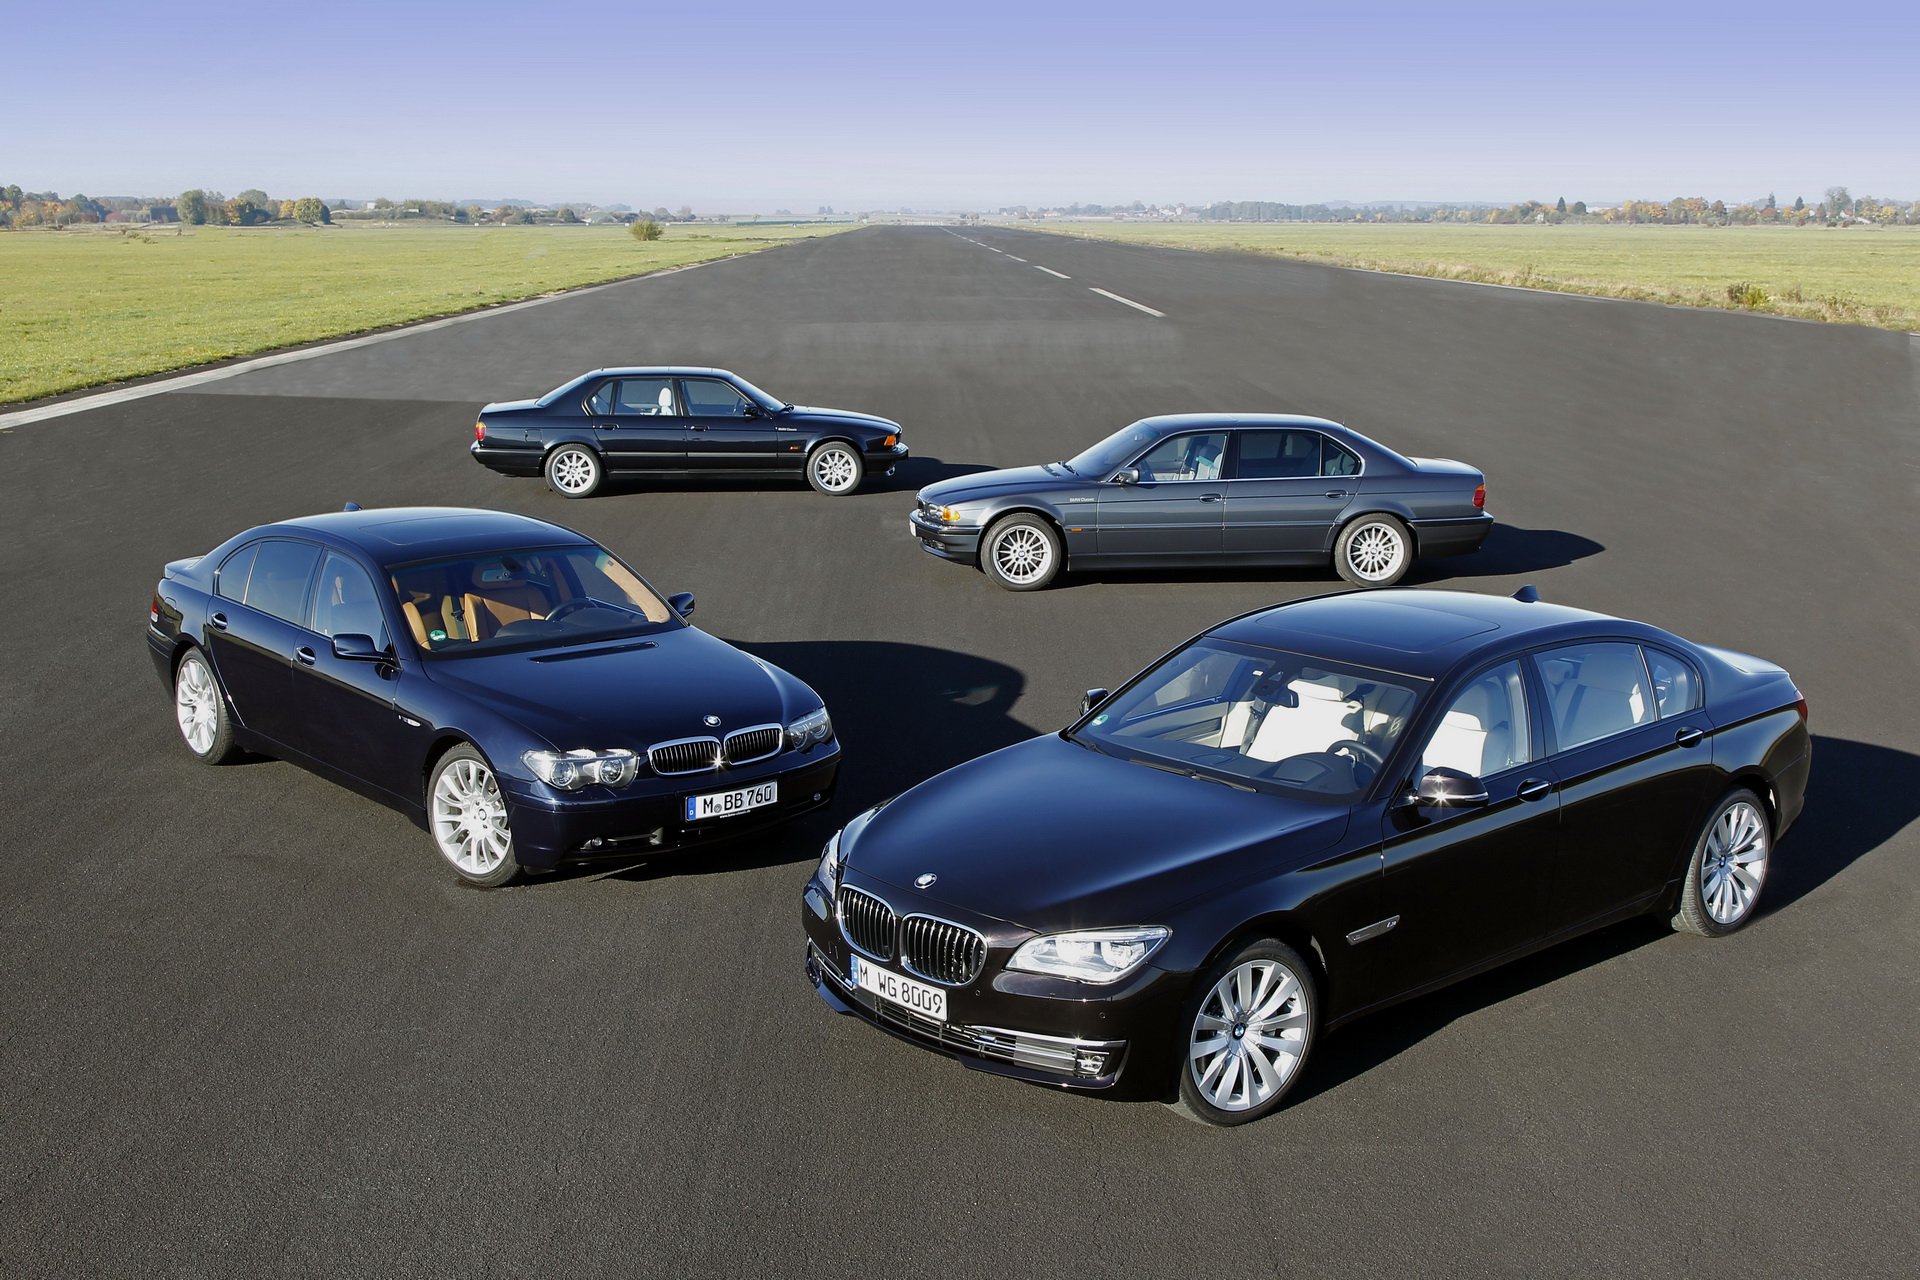 Nhìn lại quá trình “lột xác” của siêu sedan BMW 7-Series qua-trinh-lot-xac-bmw-7series-13.jpg